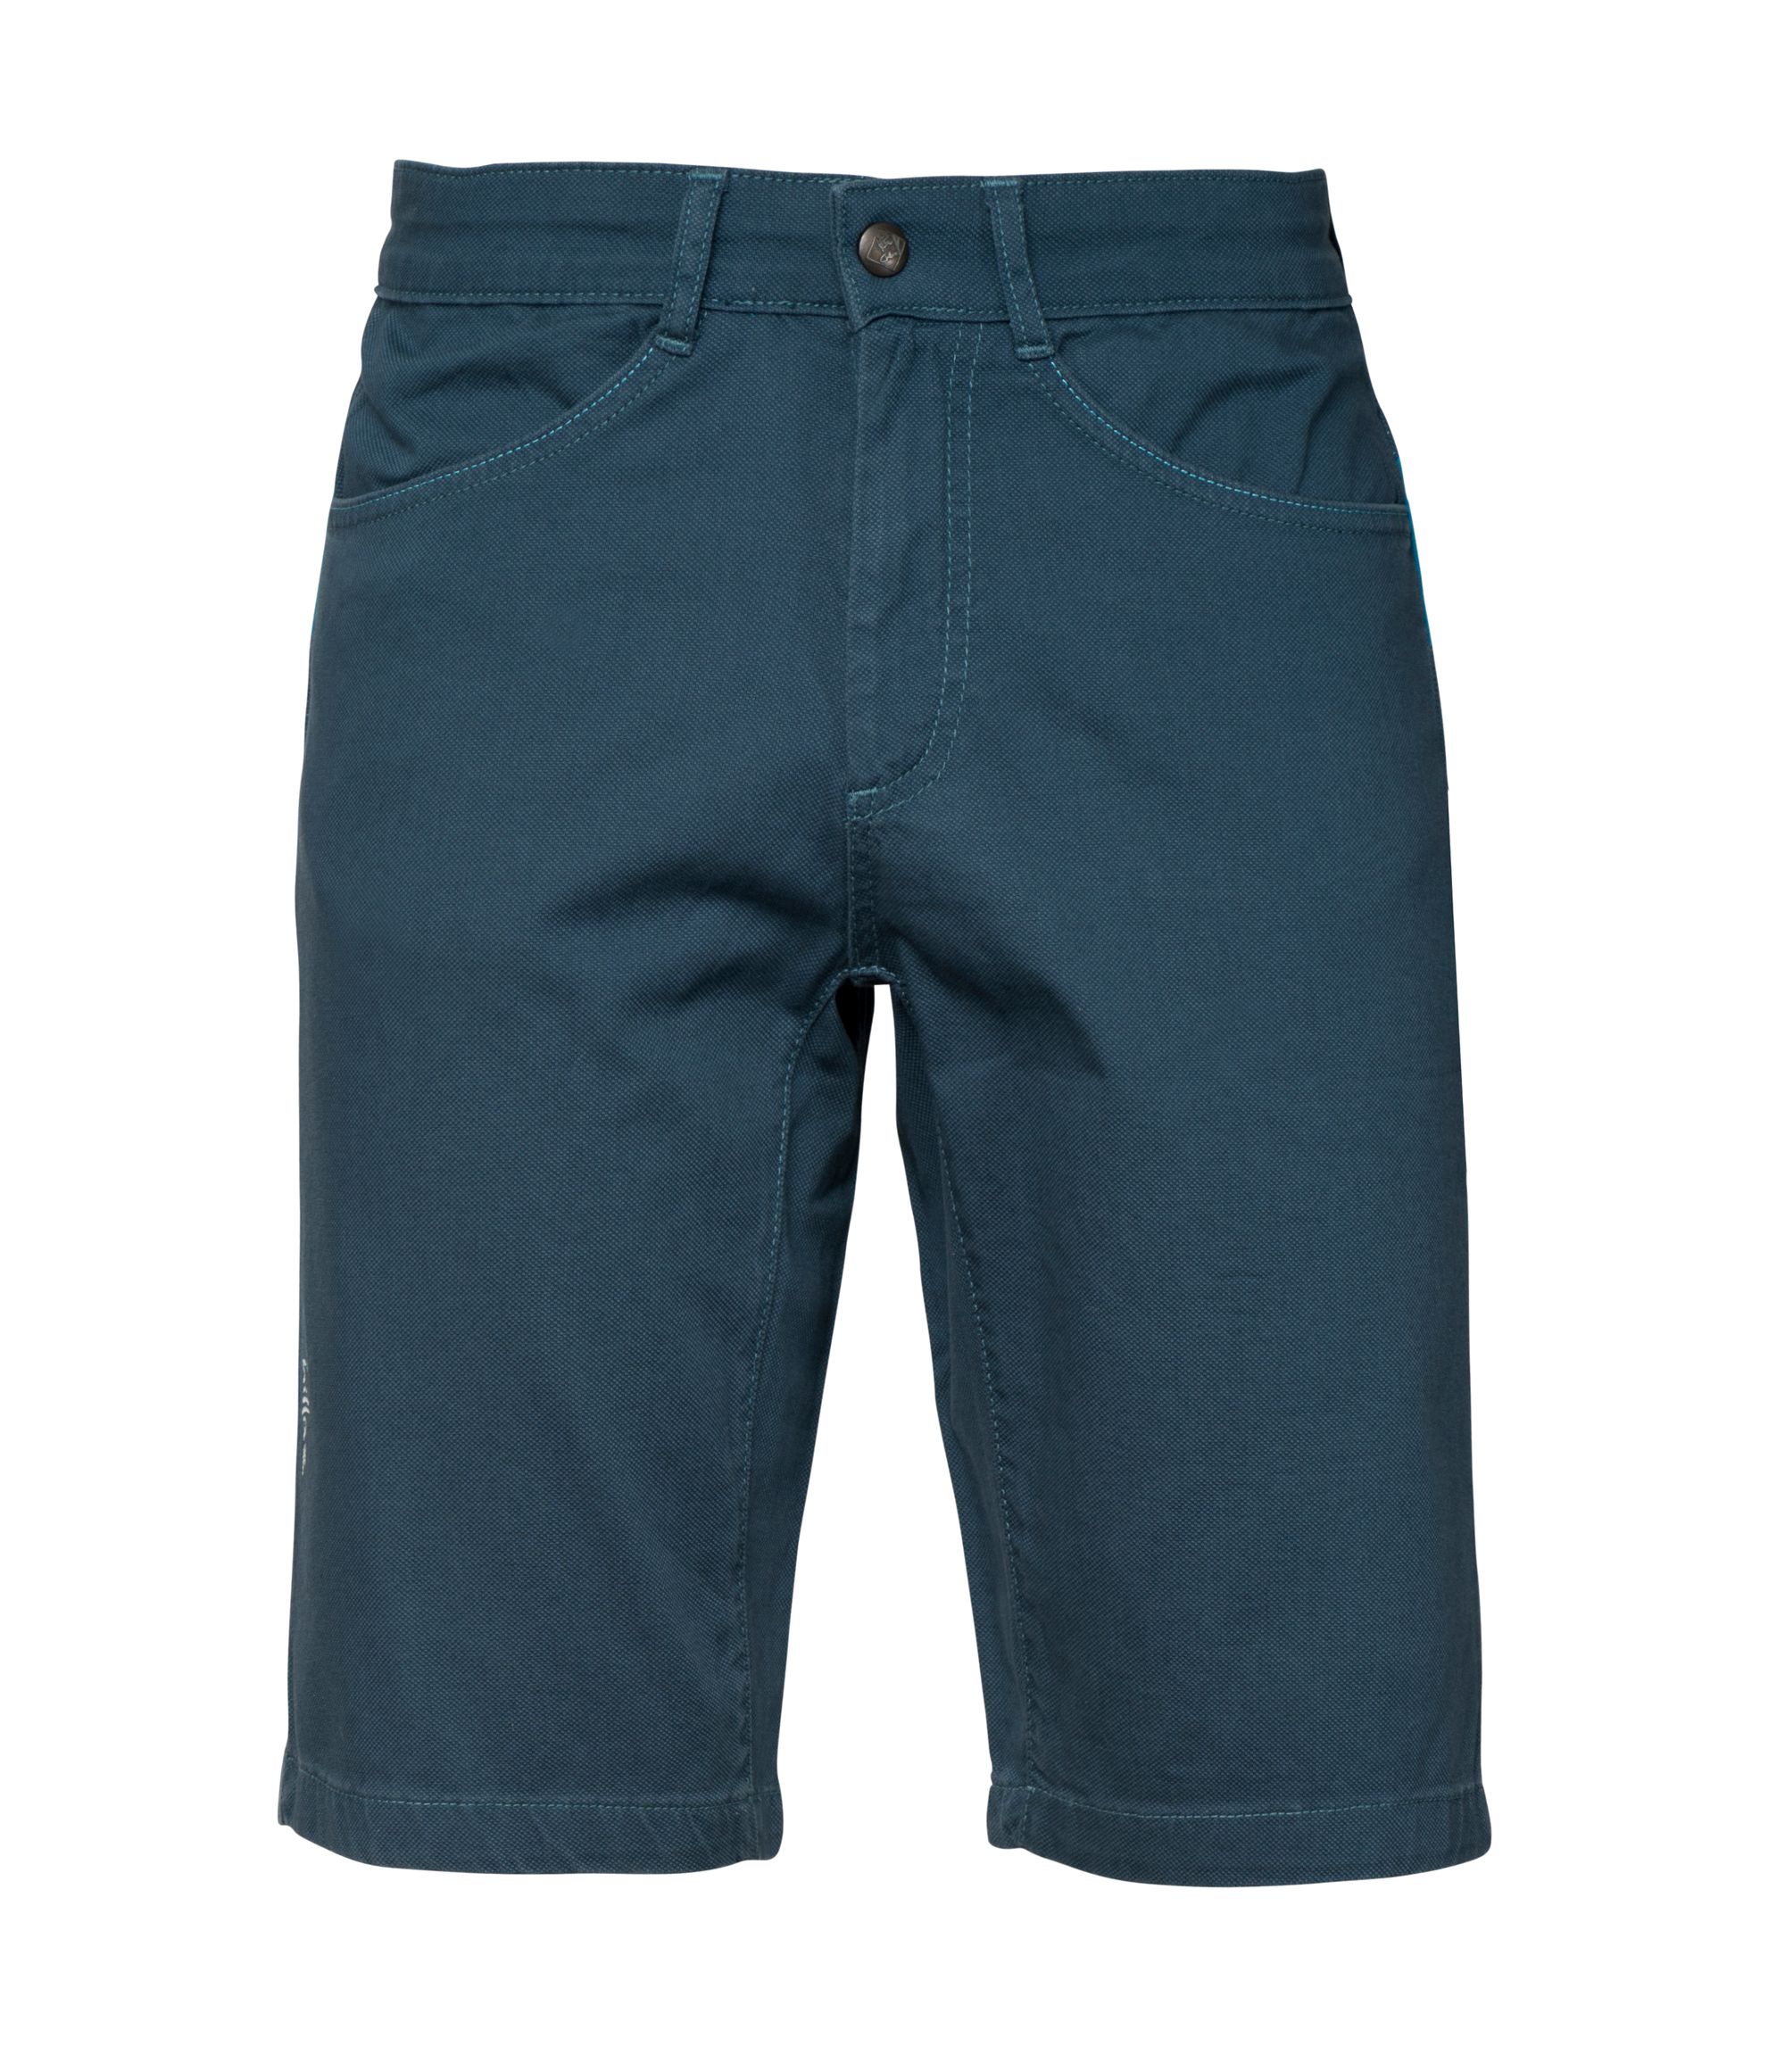 CHILLAZ Elias dark blue shorts varianta: M